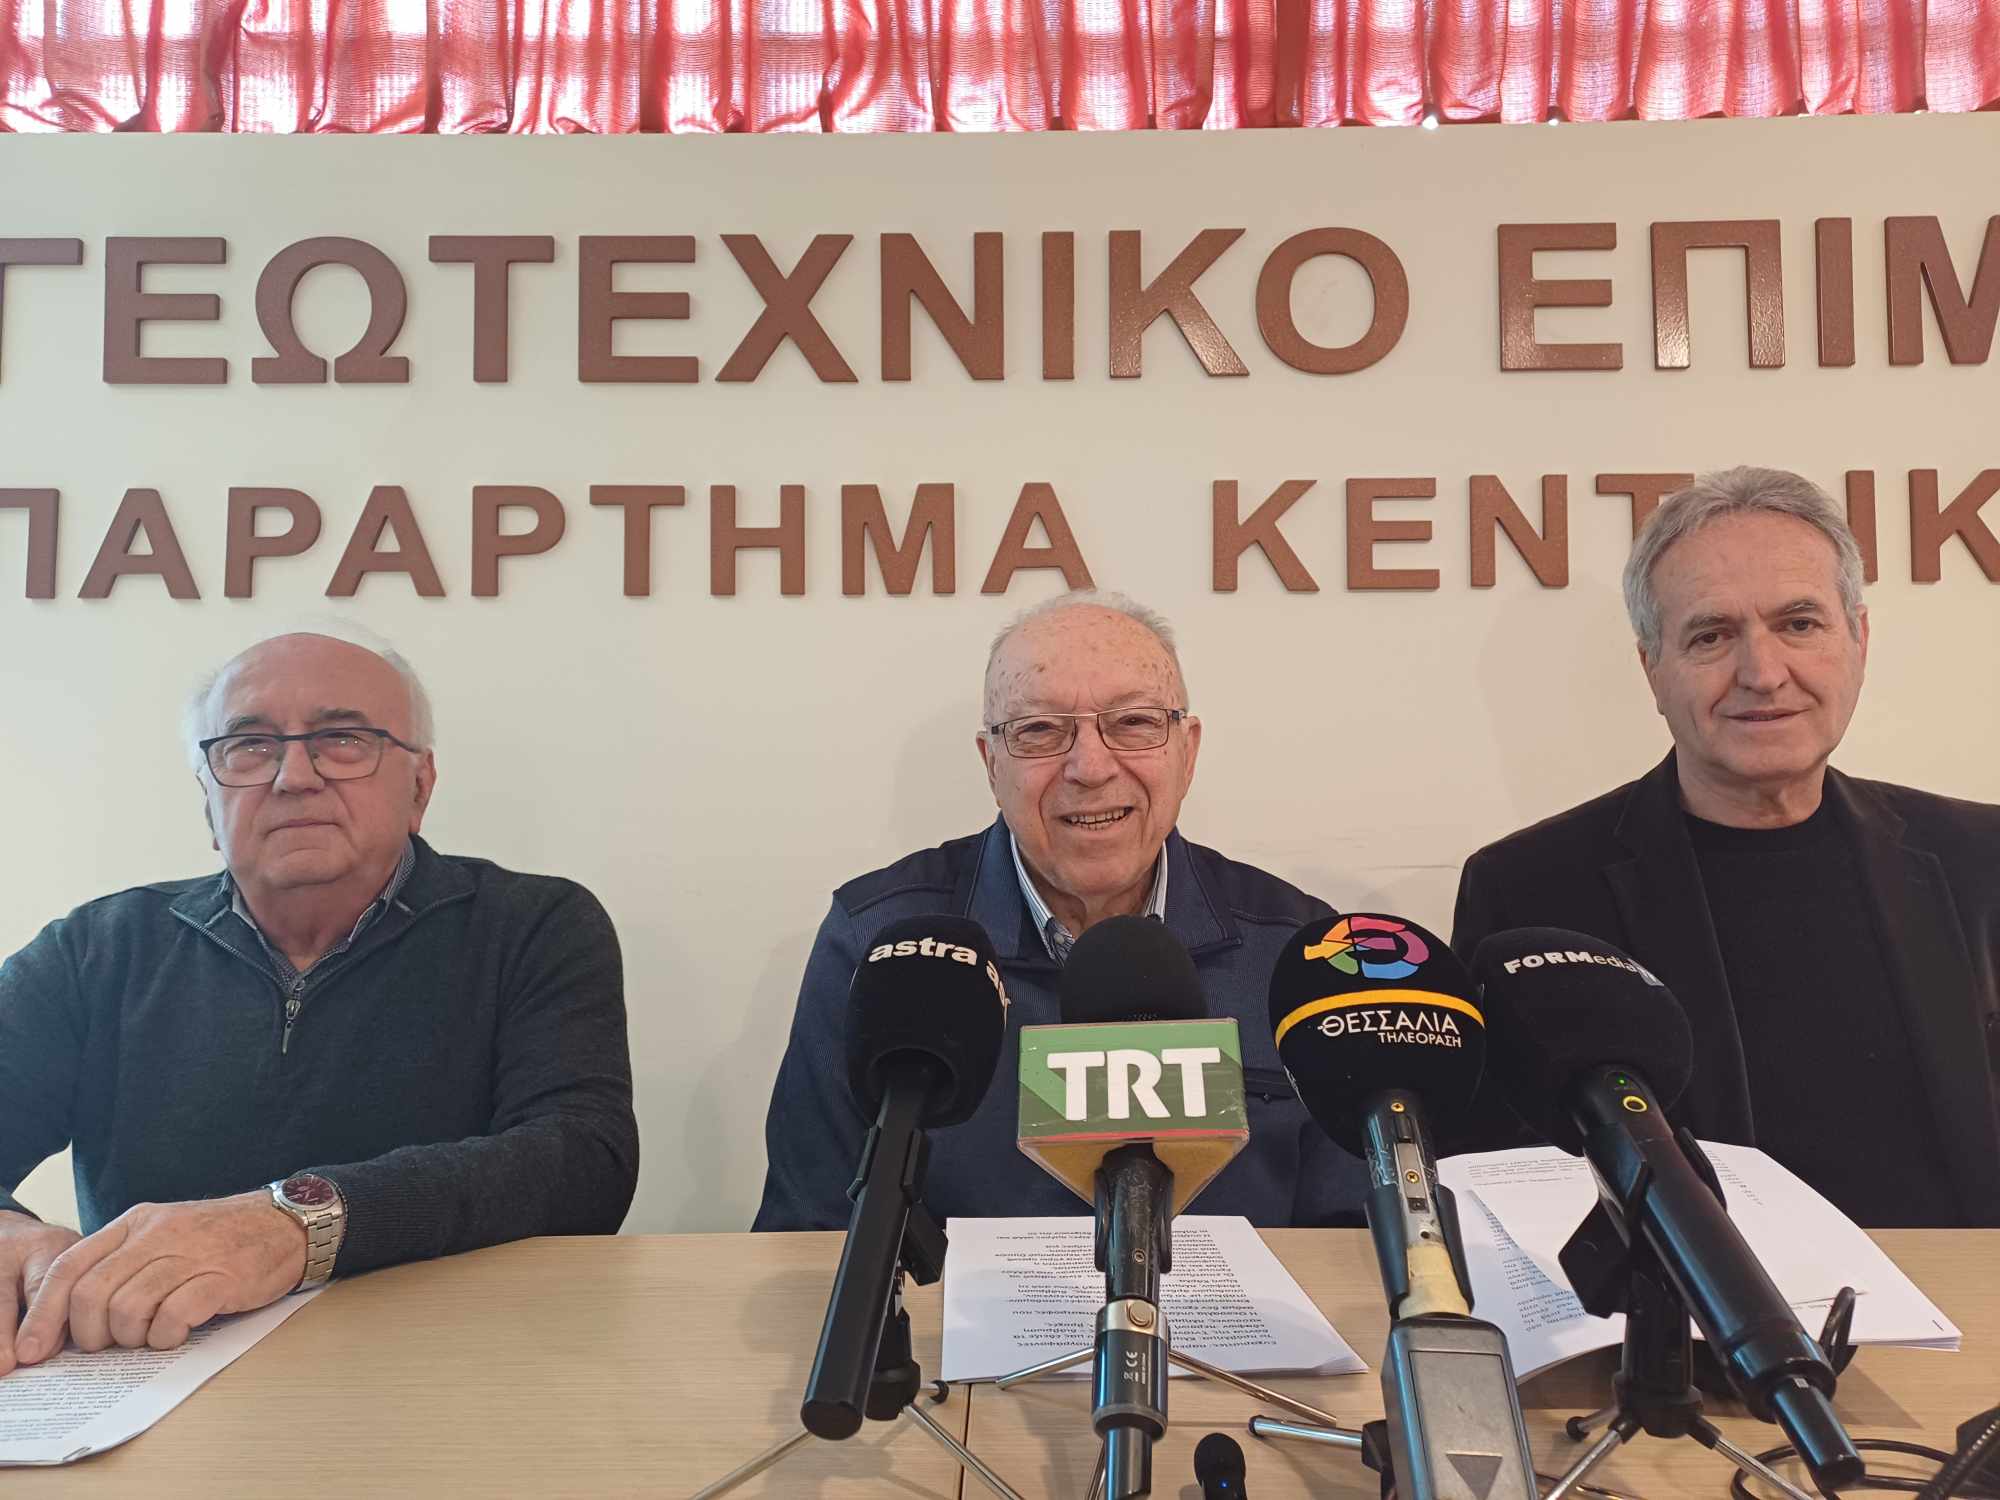 Ανησυχία και προβληματισμός για την ανασυγκρότηση της Θεσσαλίας - Κοινή ανακοίνωση με 66 υπογραφές